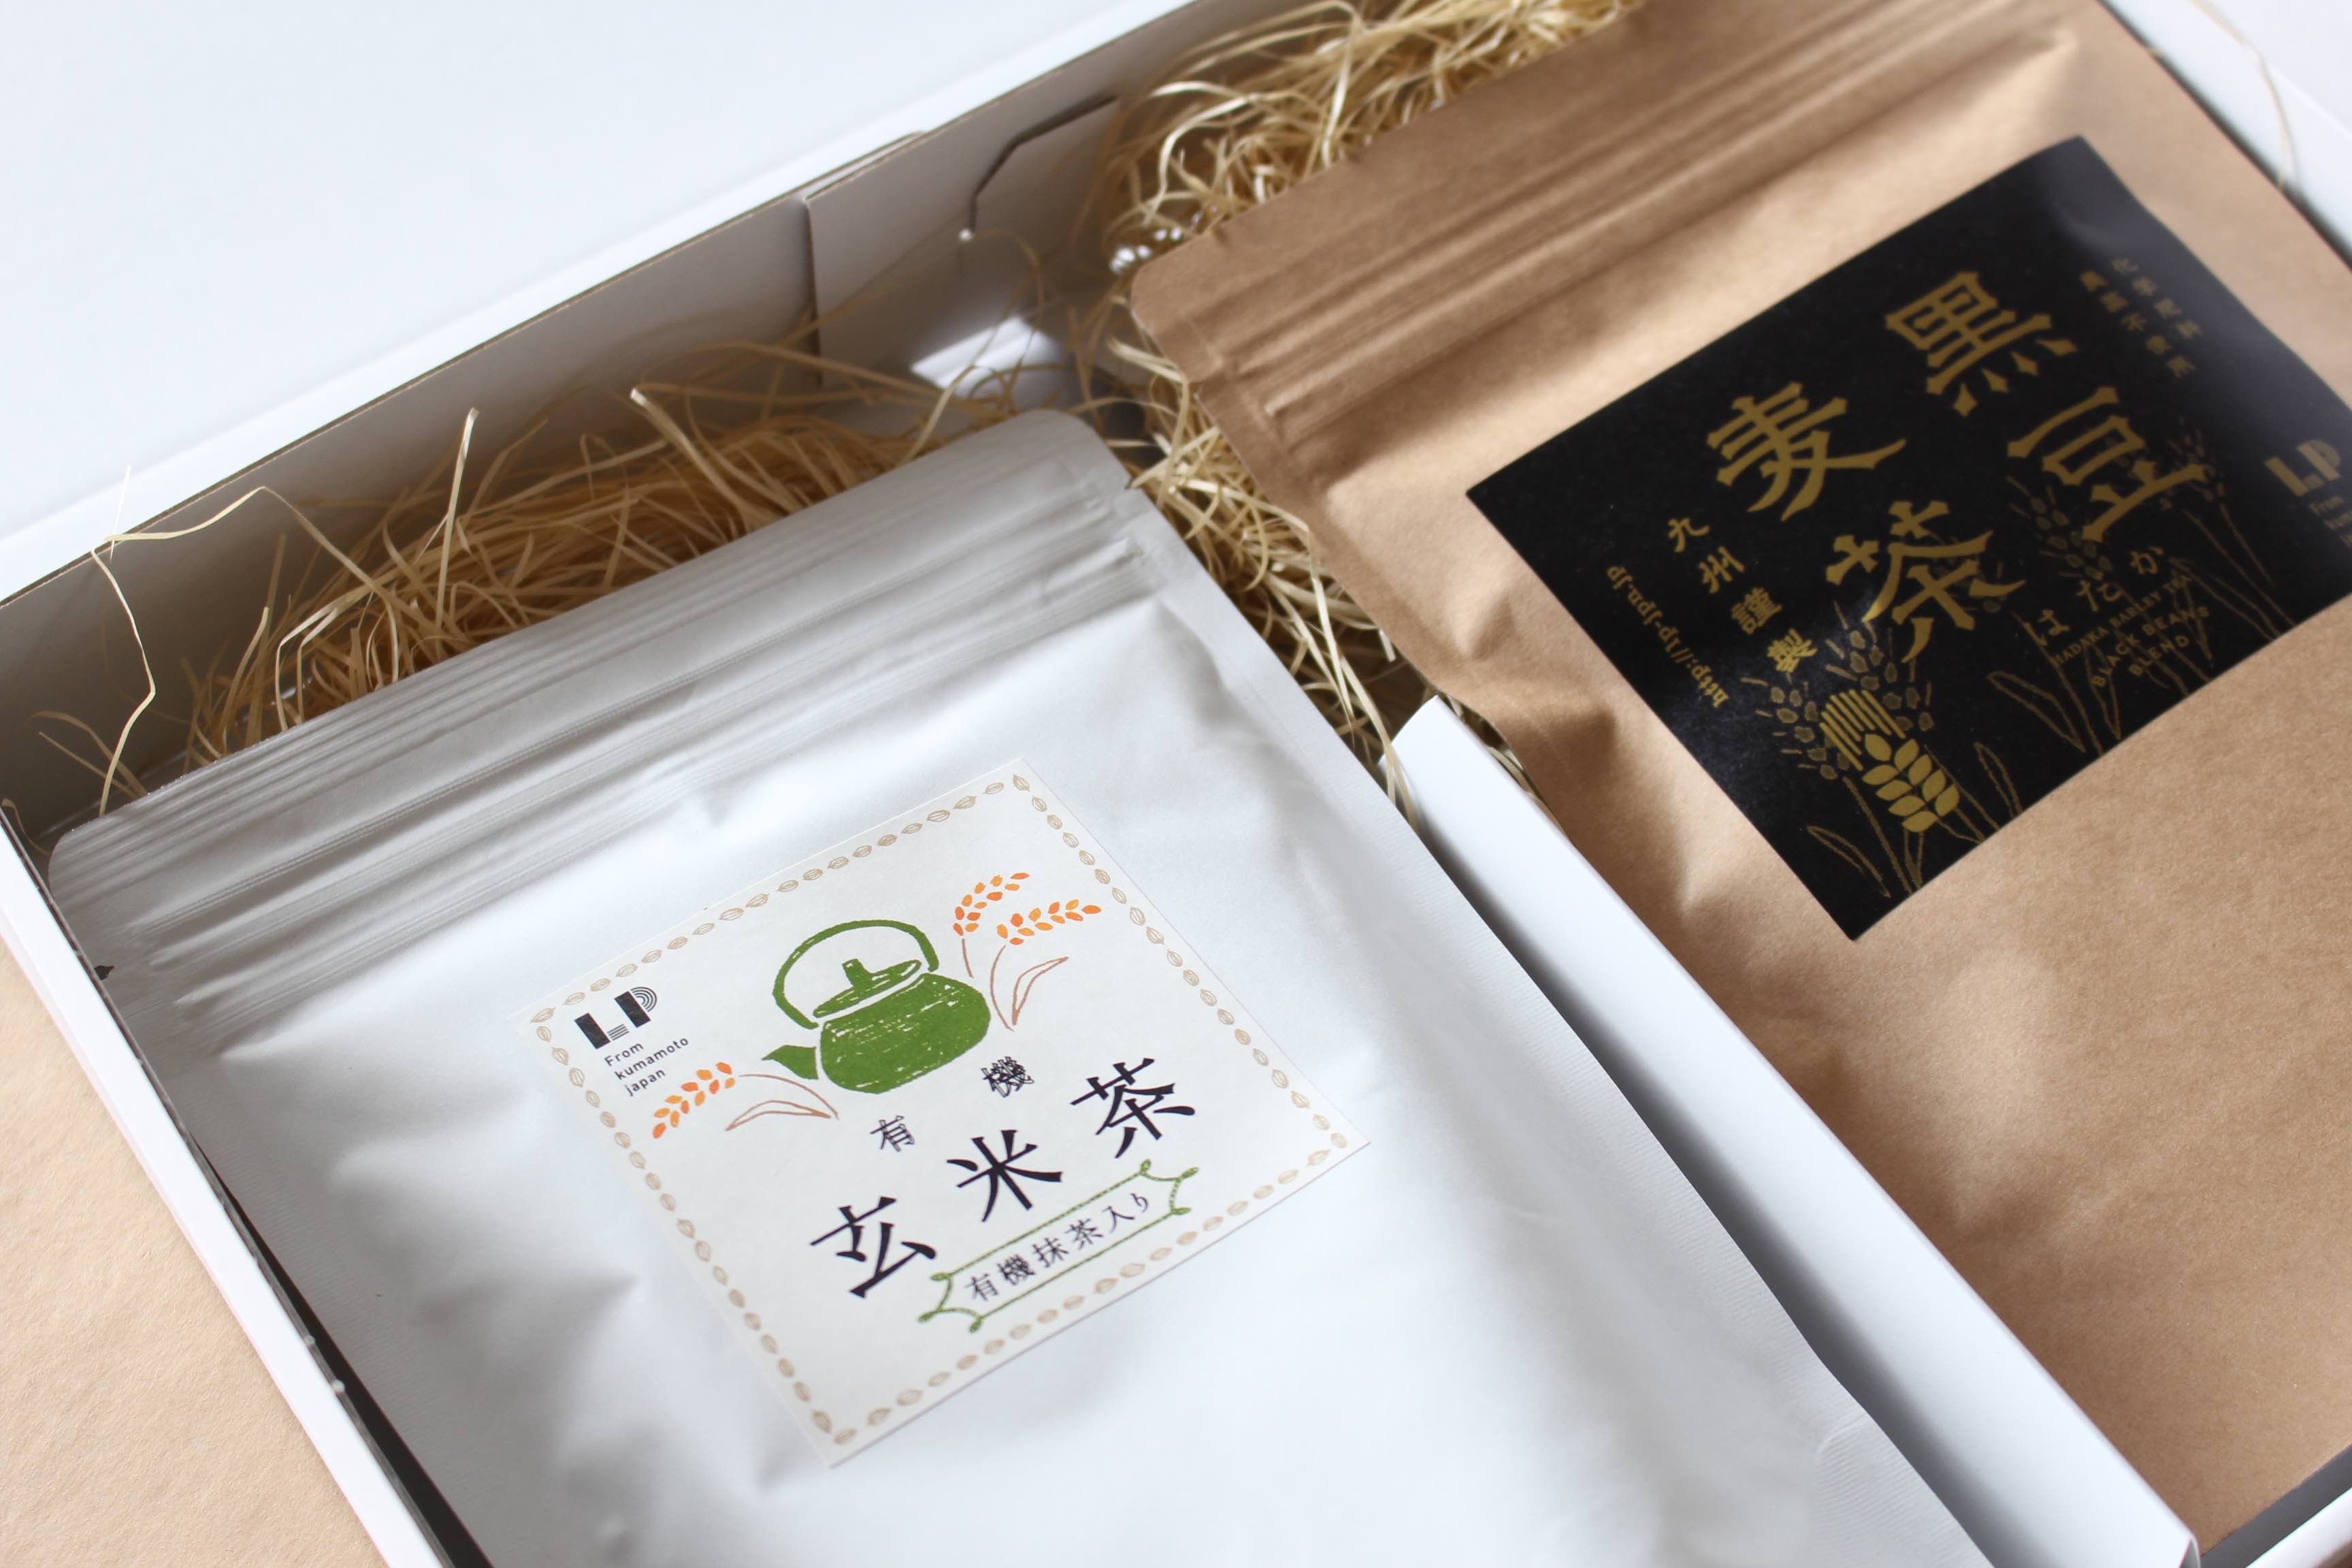 124円 【今日の超目玉】 オーサワの有機玄米茶150g